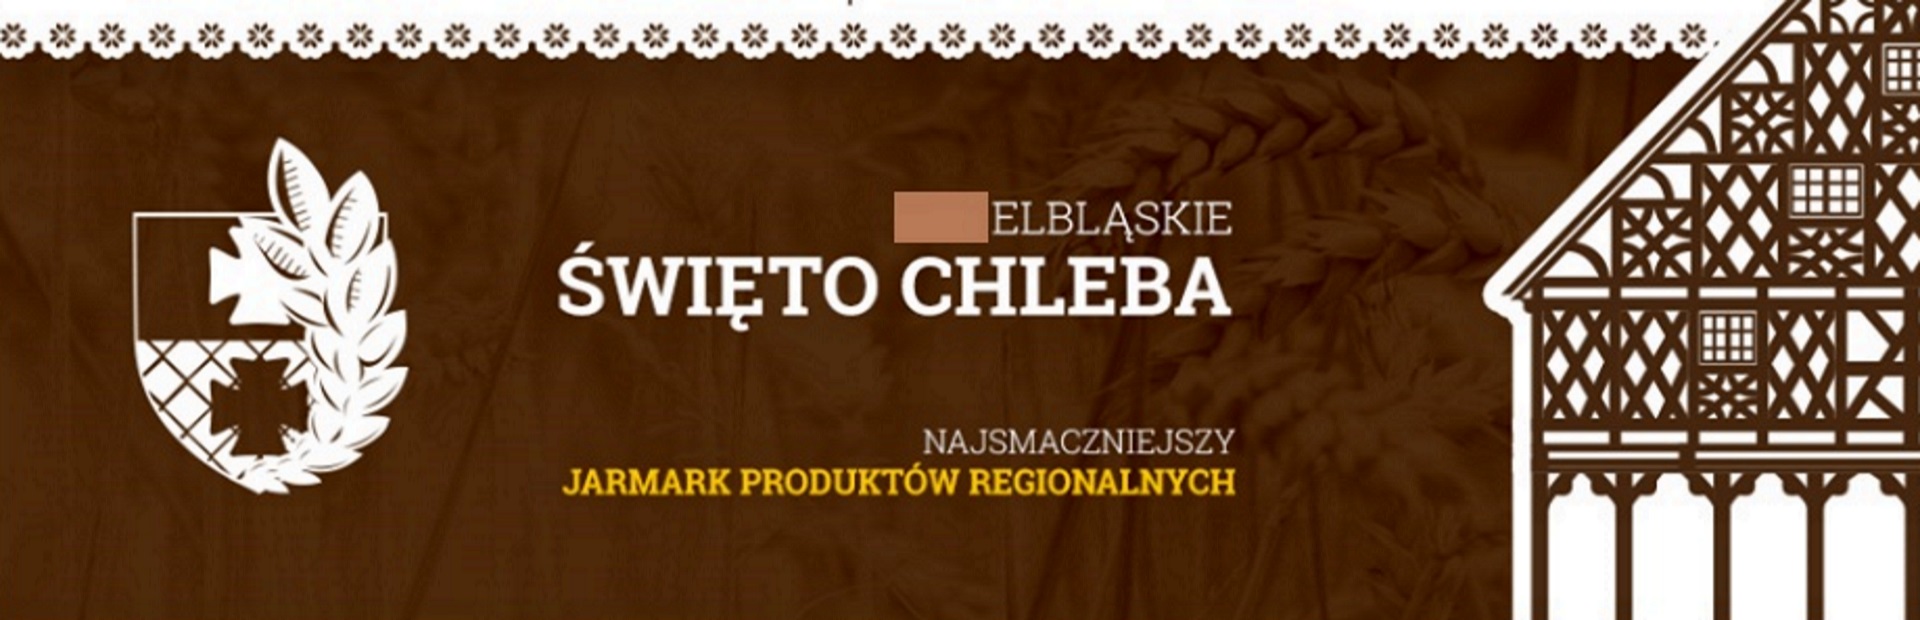 Zdjęcie - plakat zapraszający do Elbląga na 15. edycję Elbląskiego Święta Chleba 2020. Plakat graficzny z napisami informujący o imprezie.